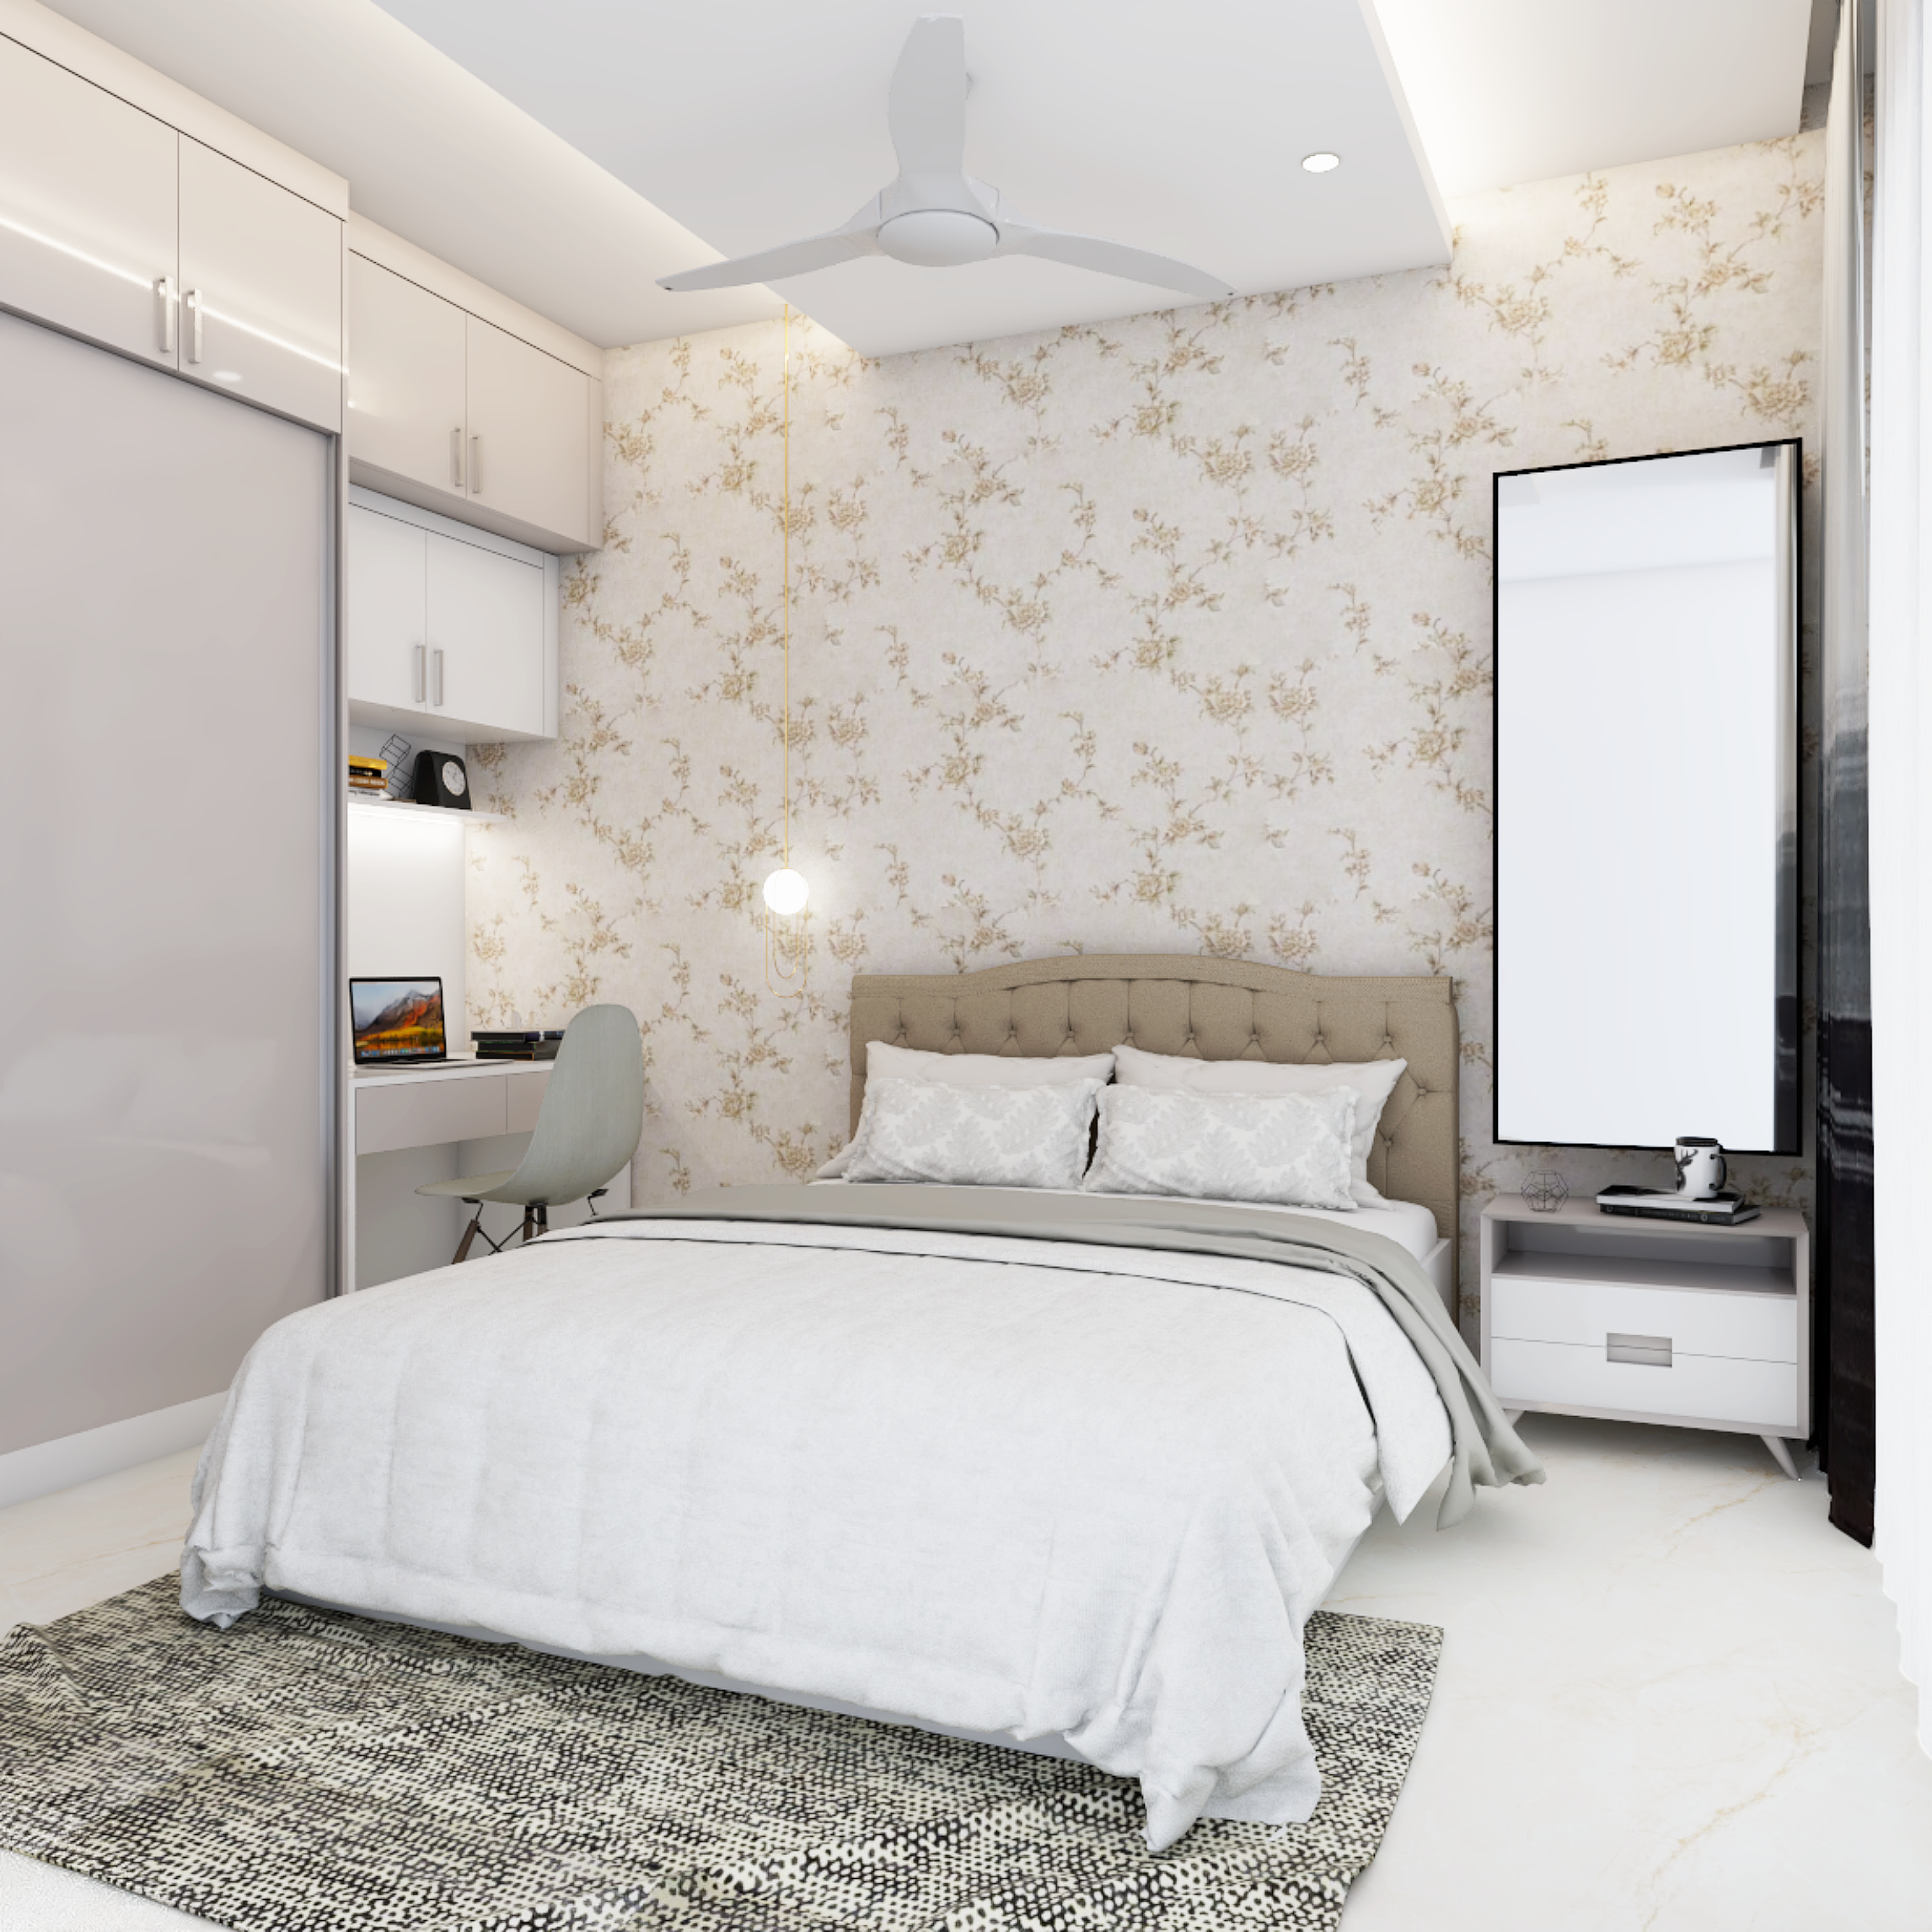 Modern Bedroom Wallpaper With A Desert Motif